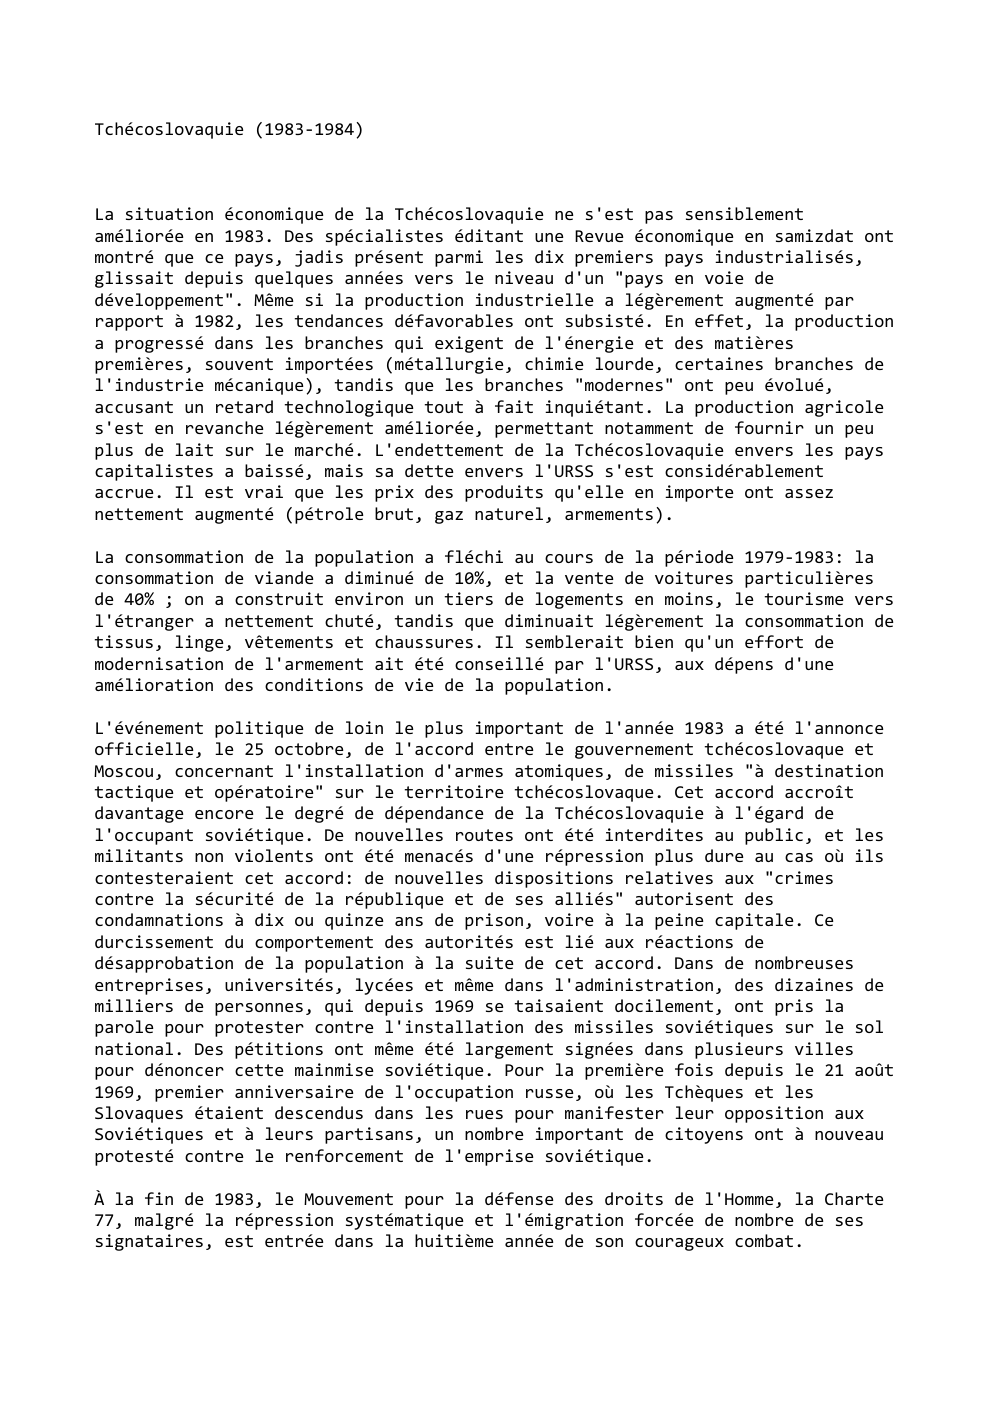 Prévisualisation du document Tchécoslovaquie (1983-1984)

La situation économique de la Tchécoslovaquie ne s'est pas sensiblement
améliorée en 1983. Des spécialistes éditant une Revue...